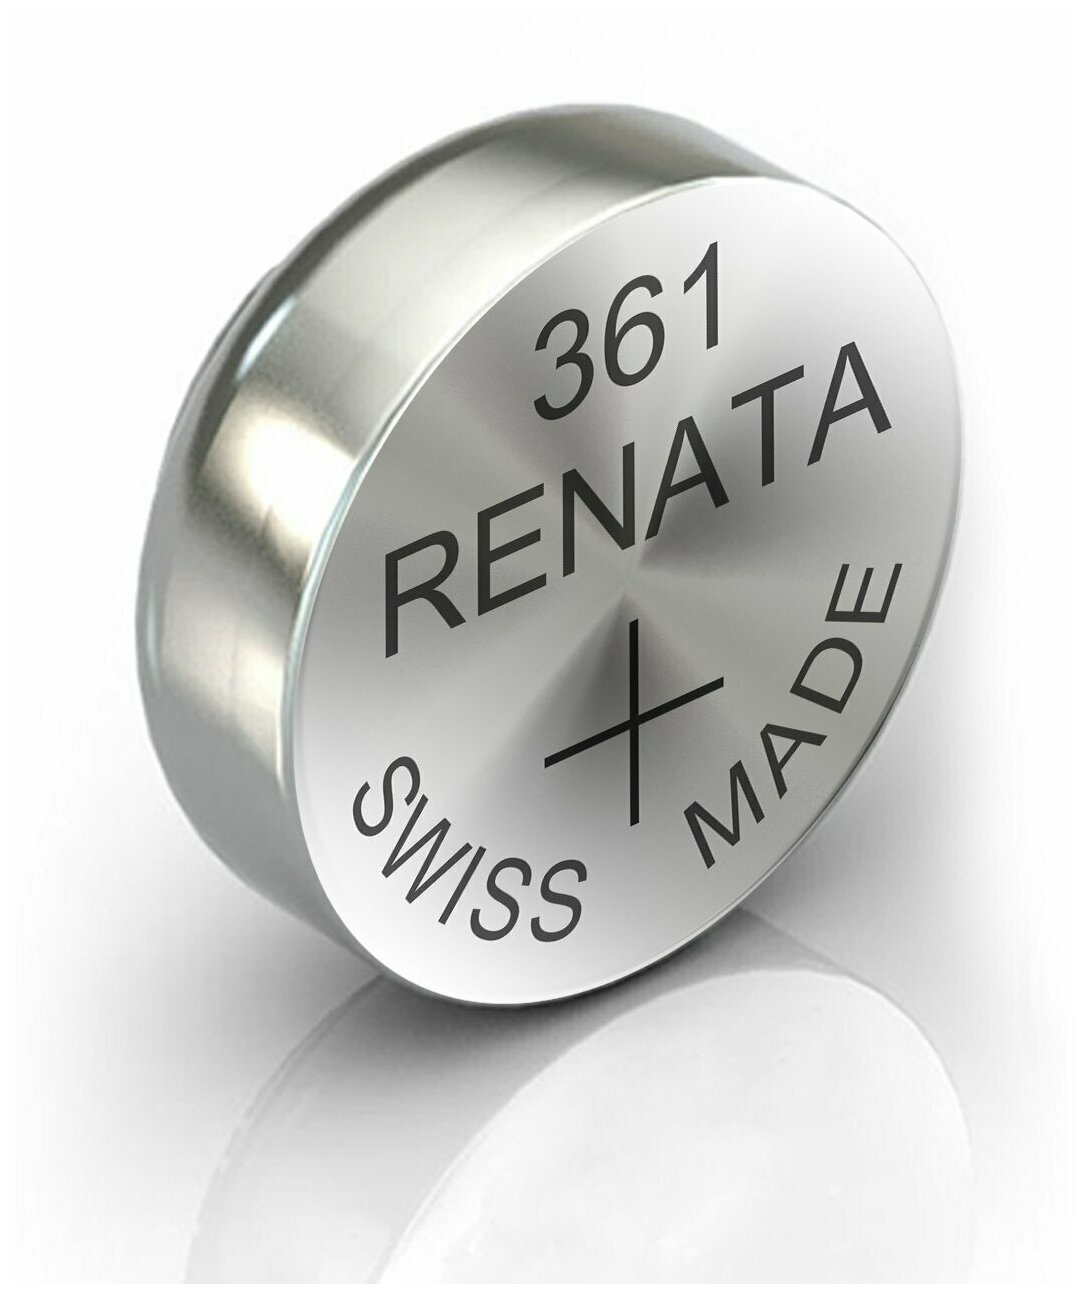 Батарейка RENATA R 361, SR721W 1 шт.